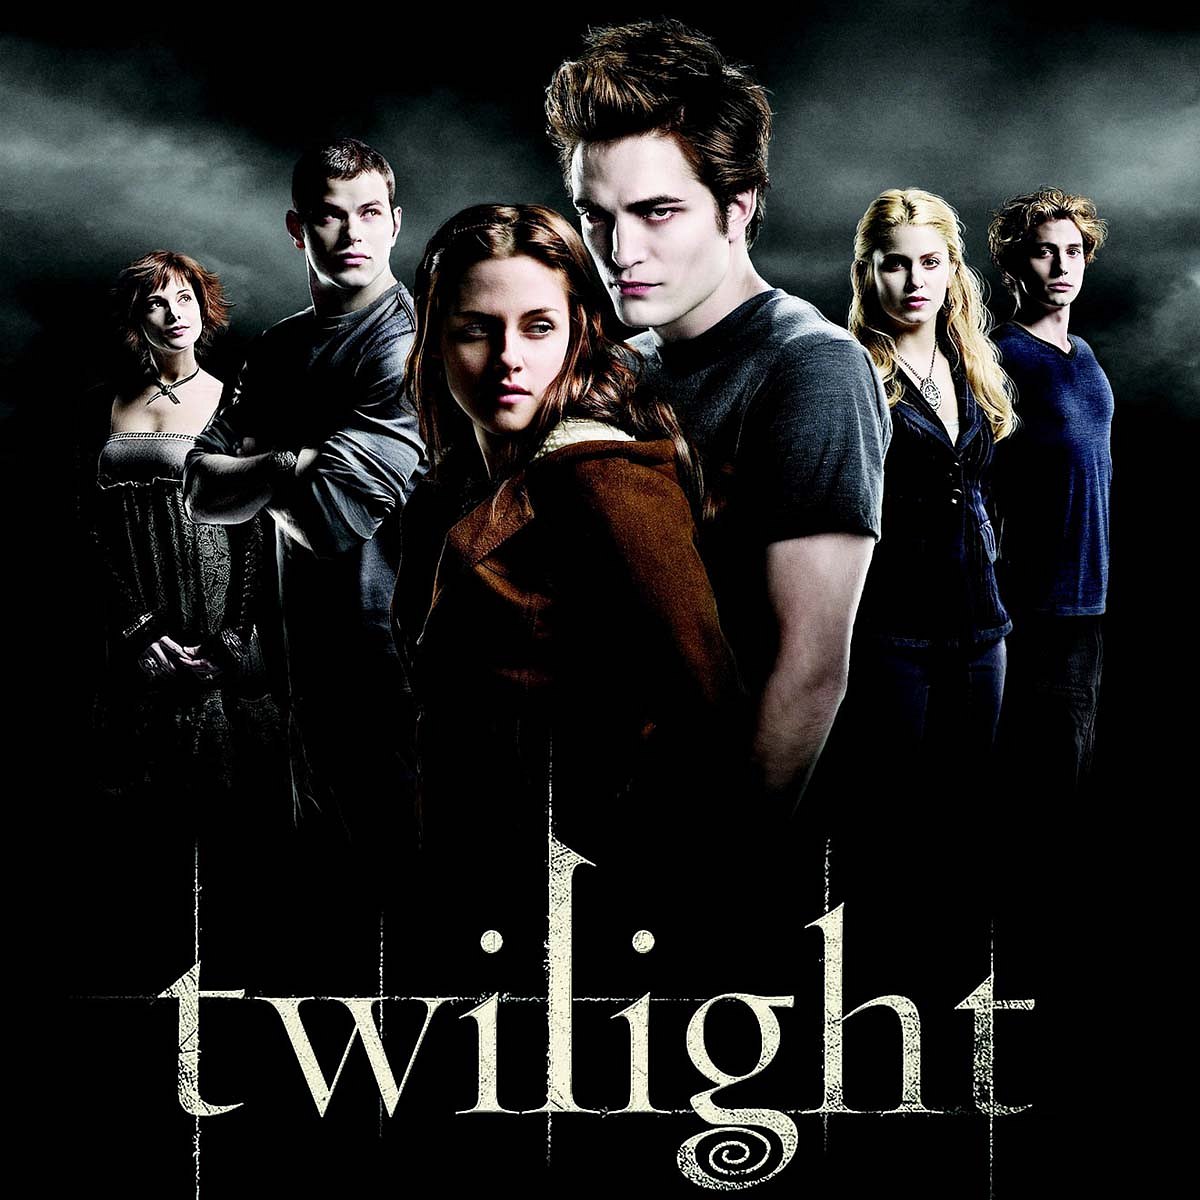 Die Twilight-Saga gehört zu den erfolgreichsten Fantasy-Romantikfilmen aller Zeiten.